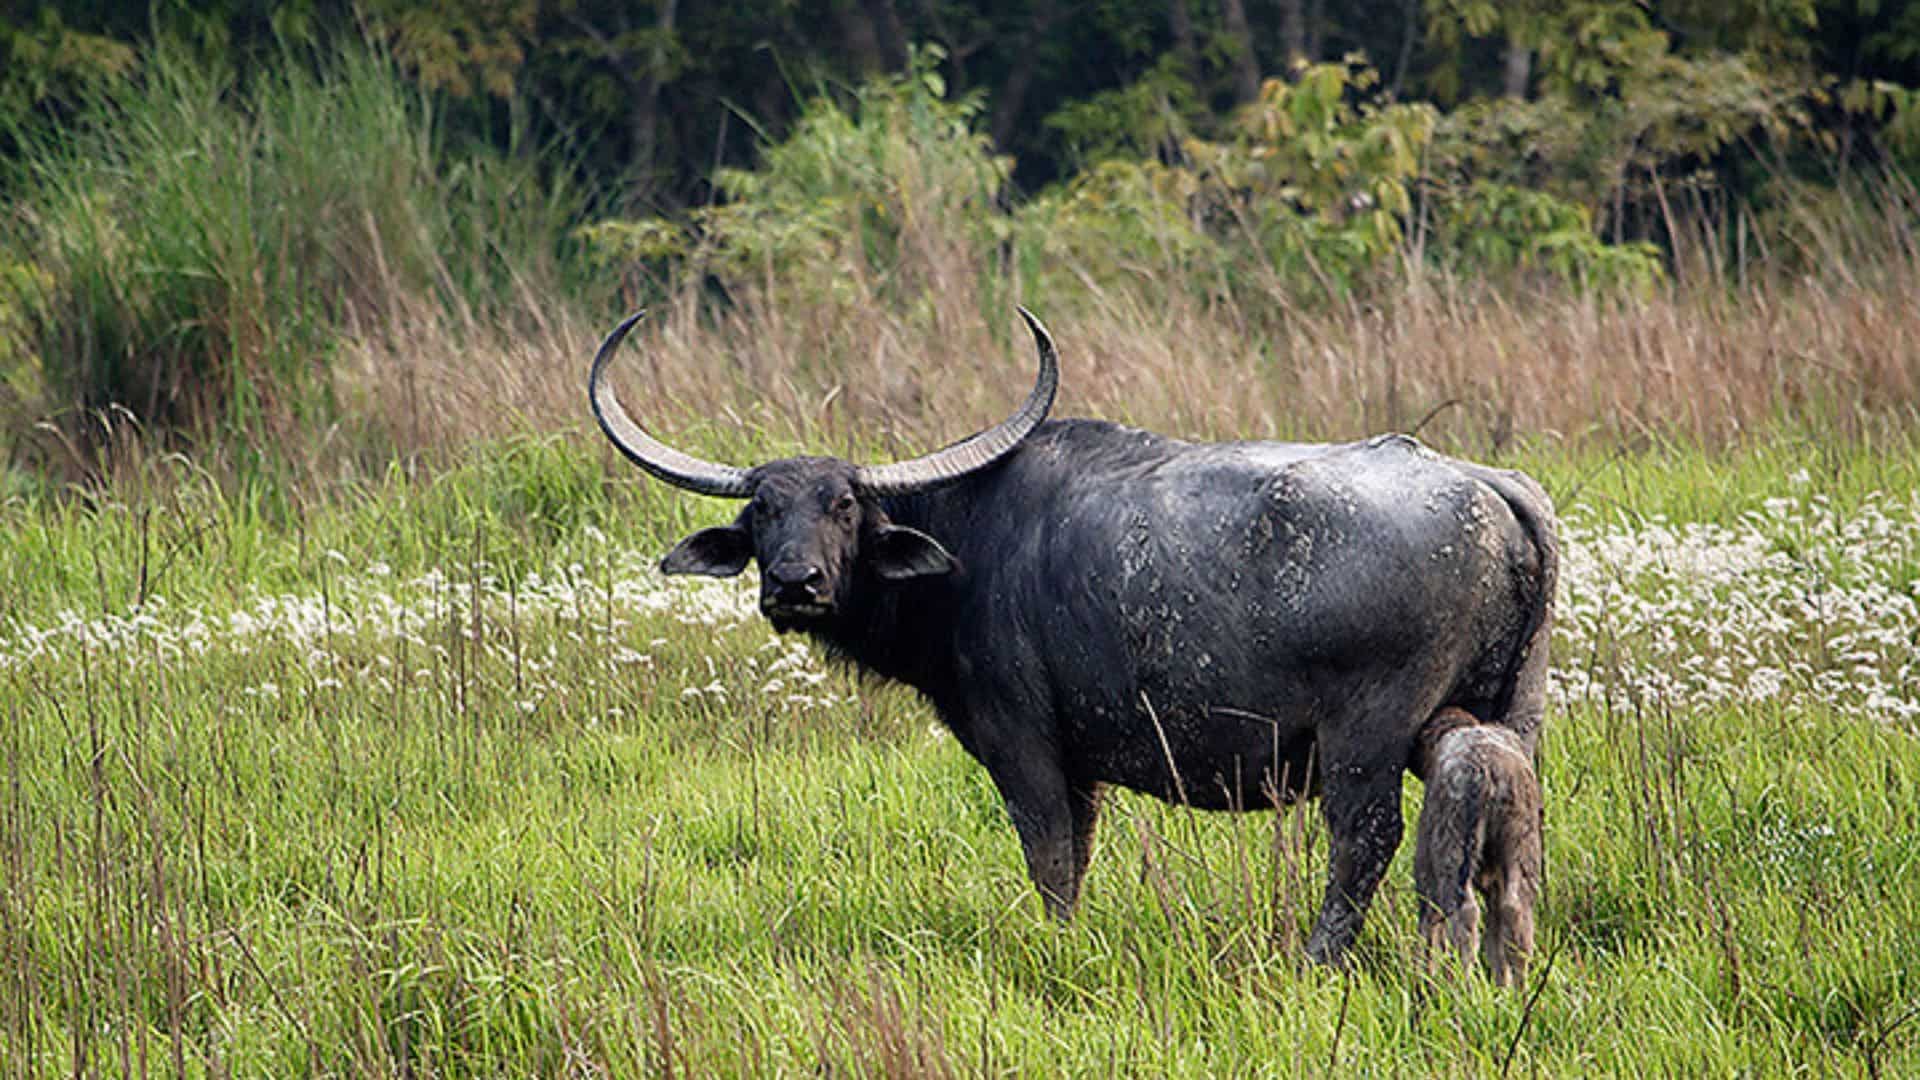 India: Wild buffalo attack kills one Kaziranga woodland officer, injures one other